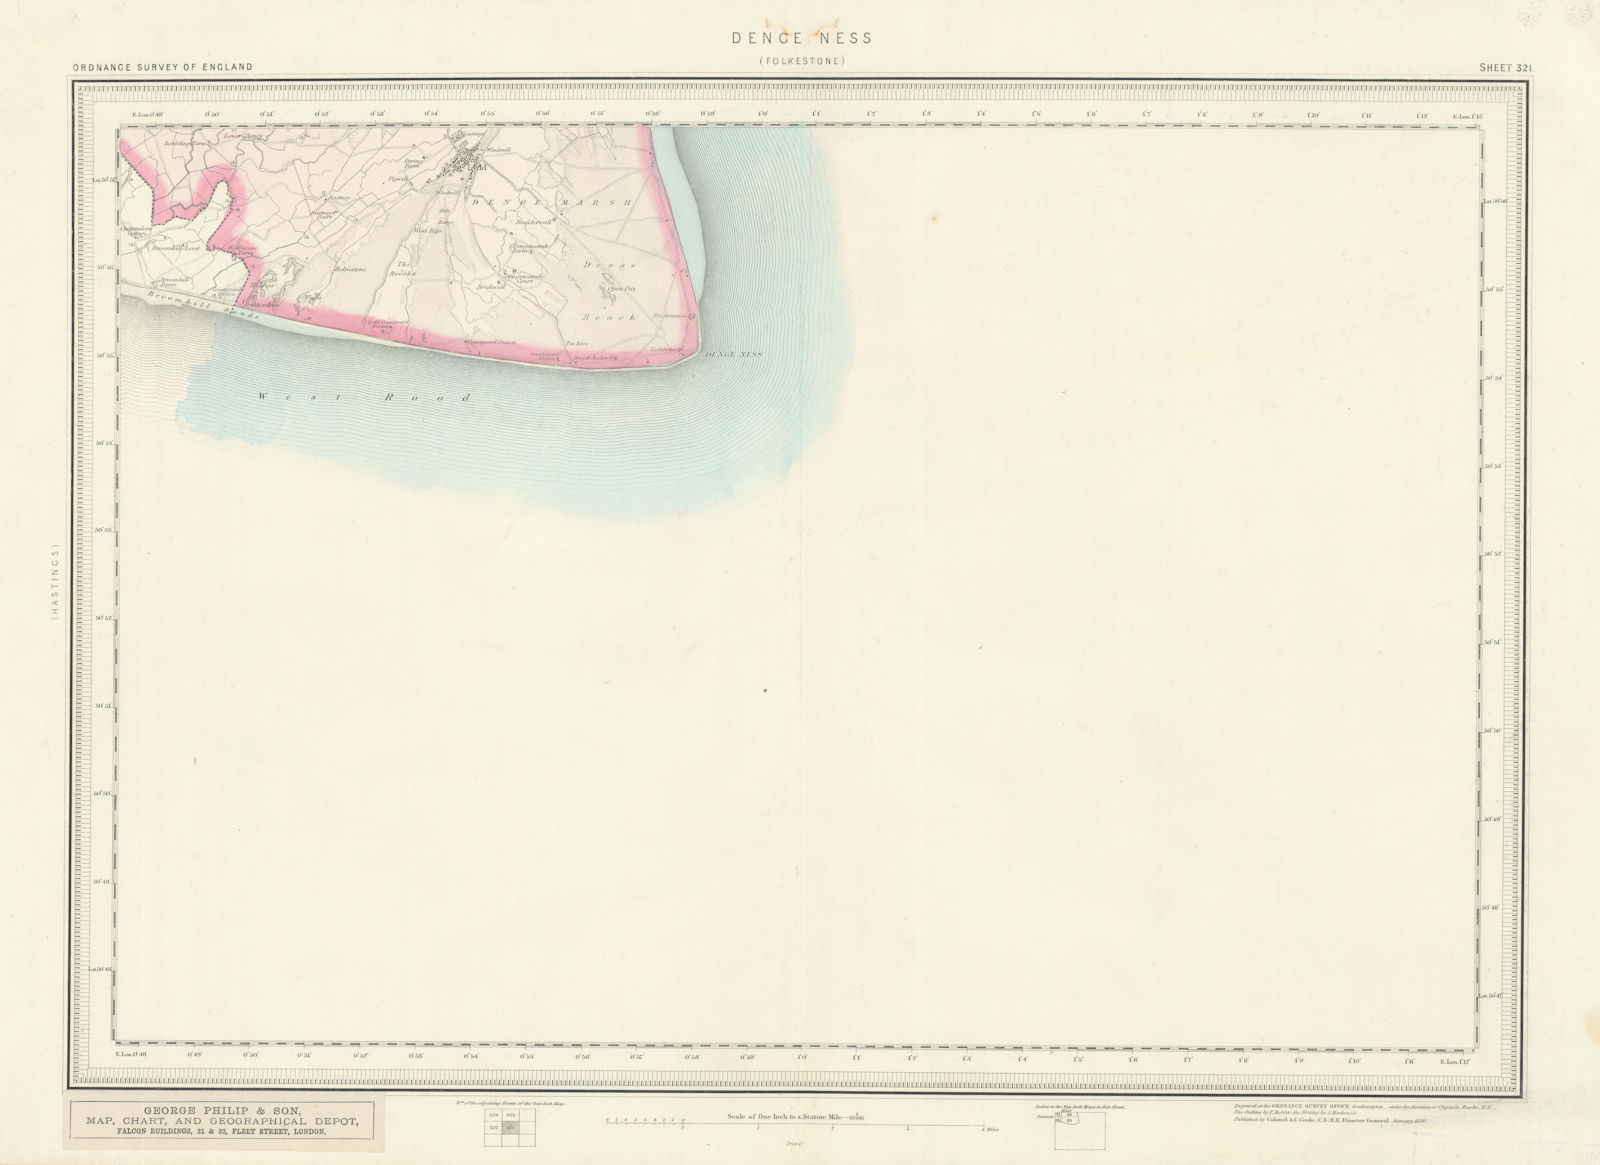 Ordnance Survey Sheet 321 "Denge Ness". Dungeness Lydd Kent 1880 old map